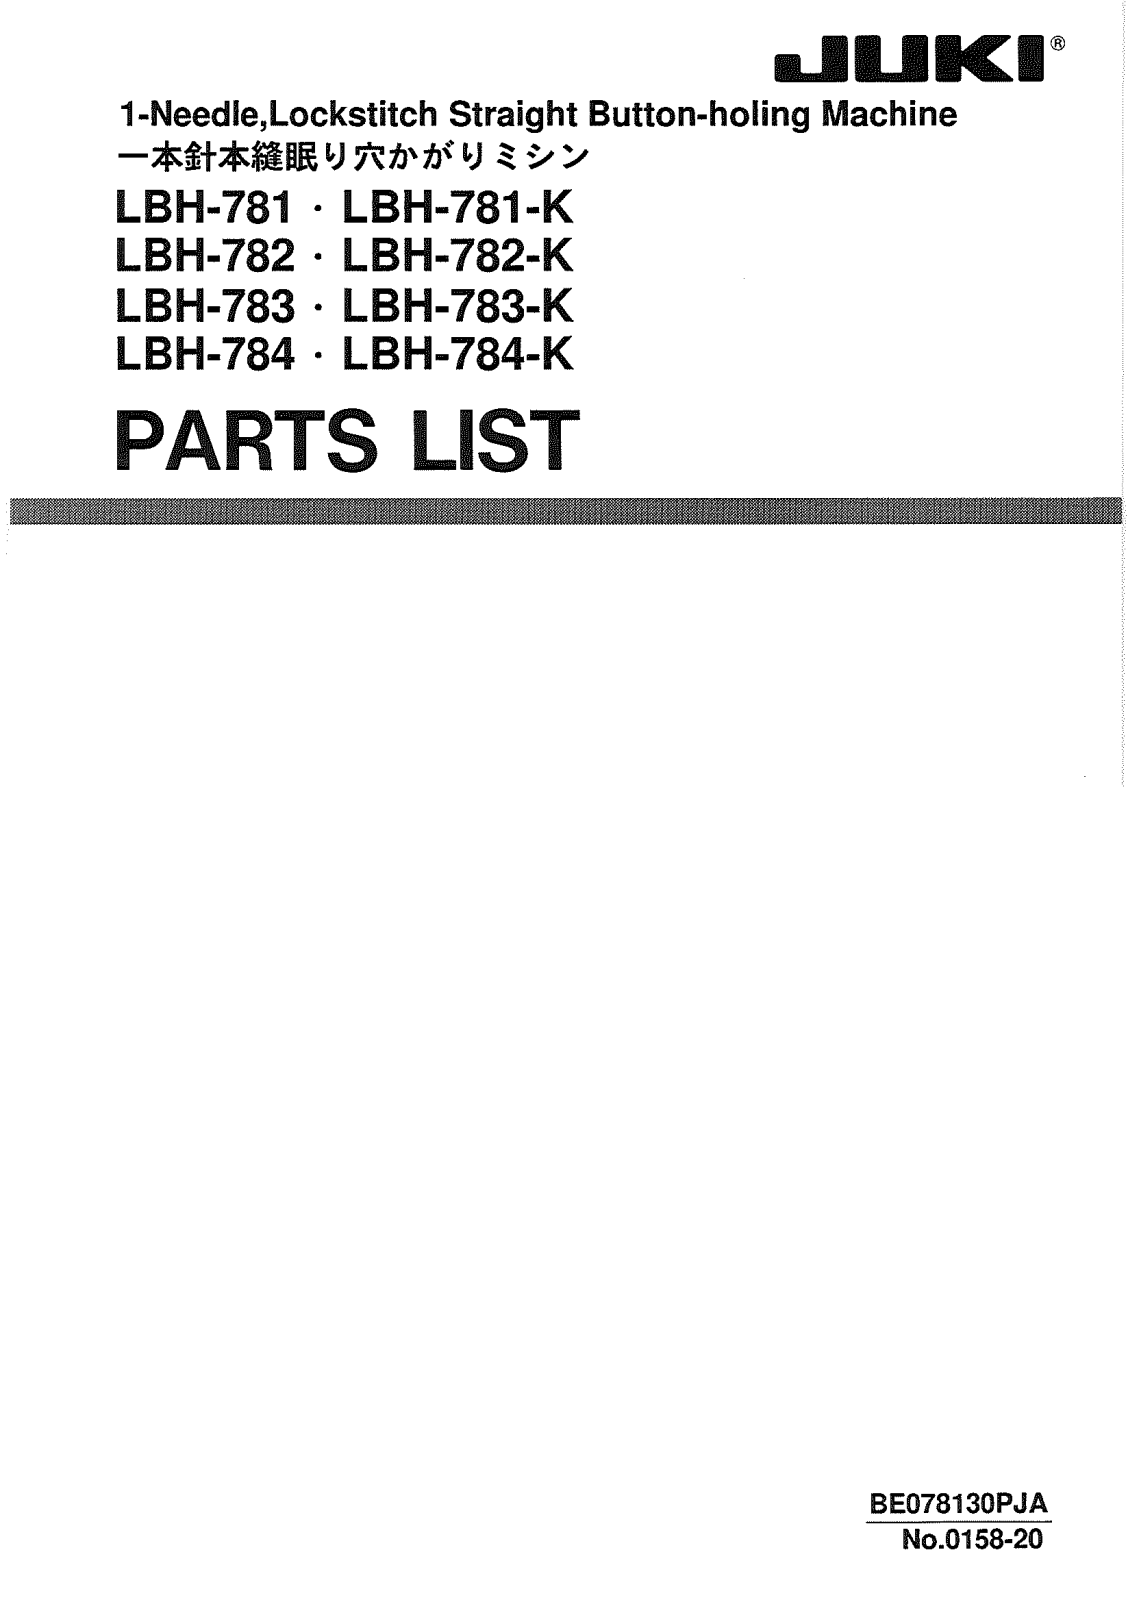 JUKI LBH-781, LBH-781-K, LBH-782, LBH-782-K, LBH-783 Parts List